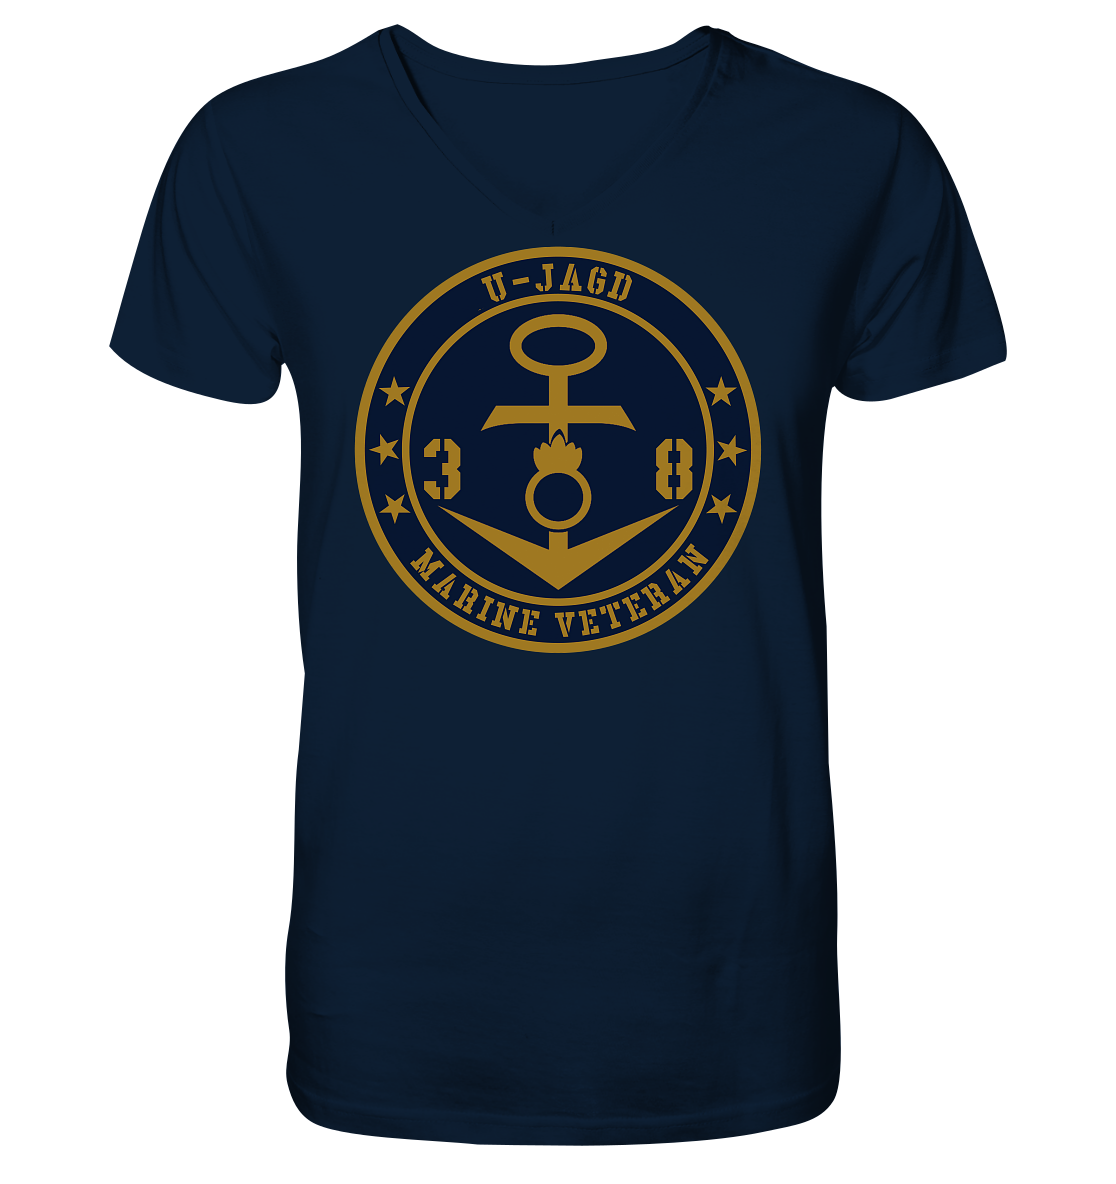 Marine Veteran 38er U-JAGD - Mens Organic V-Neck Shirt